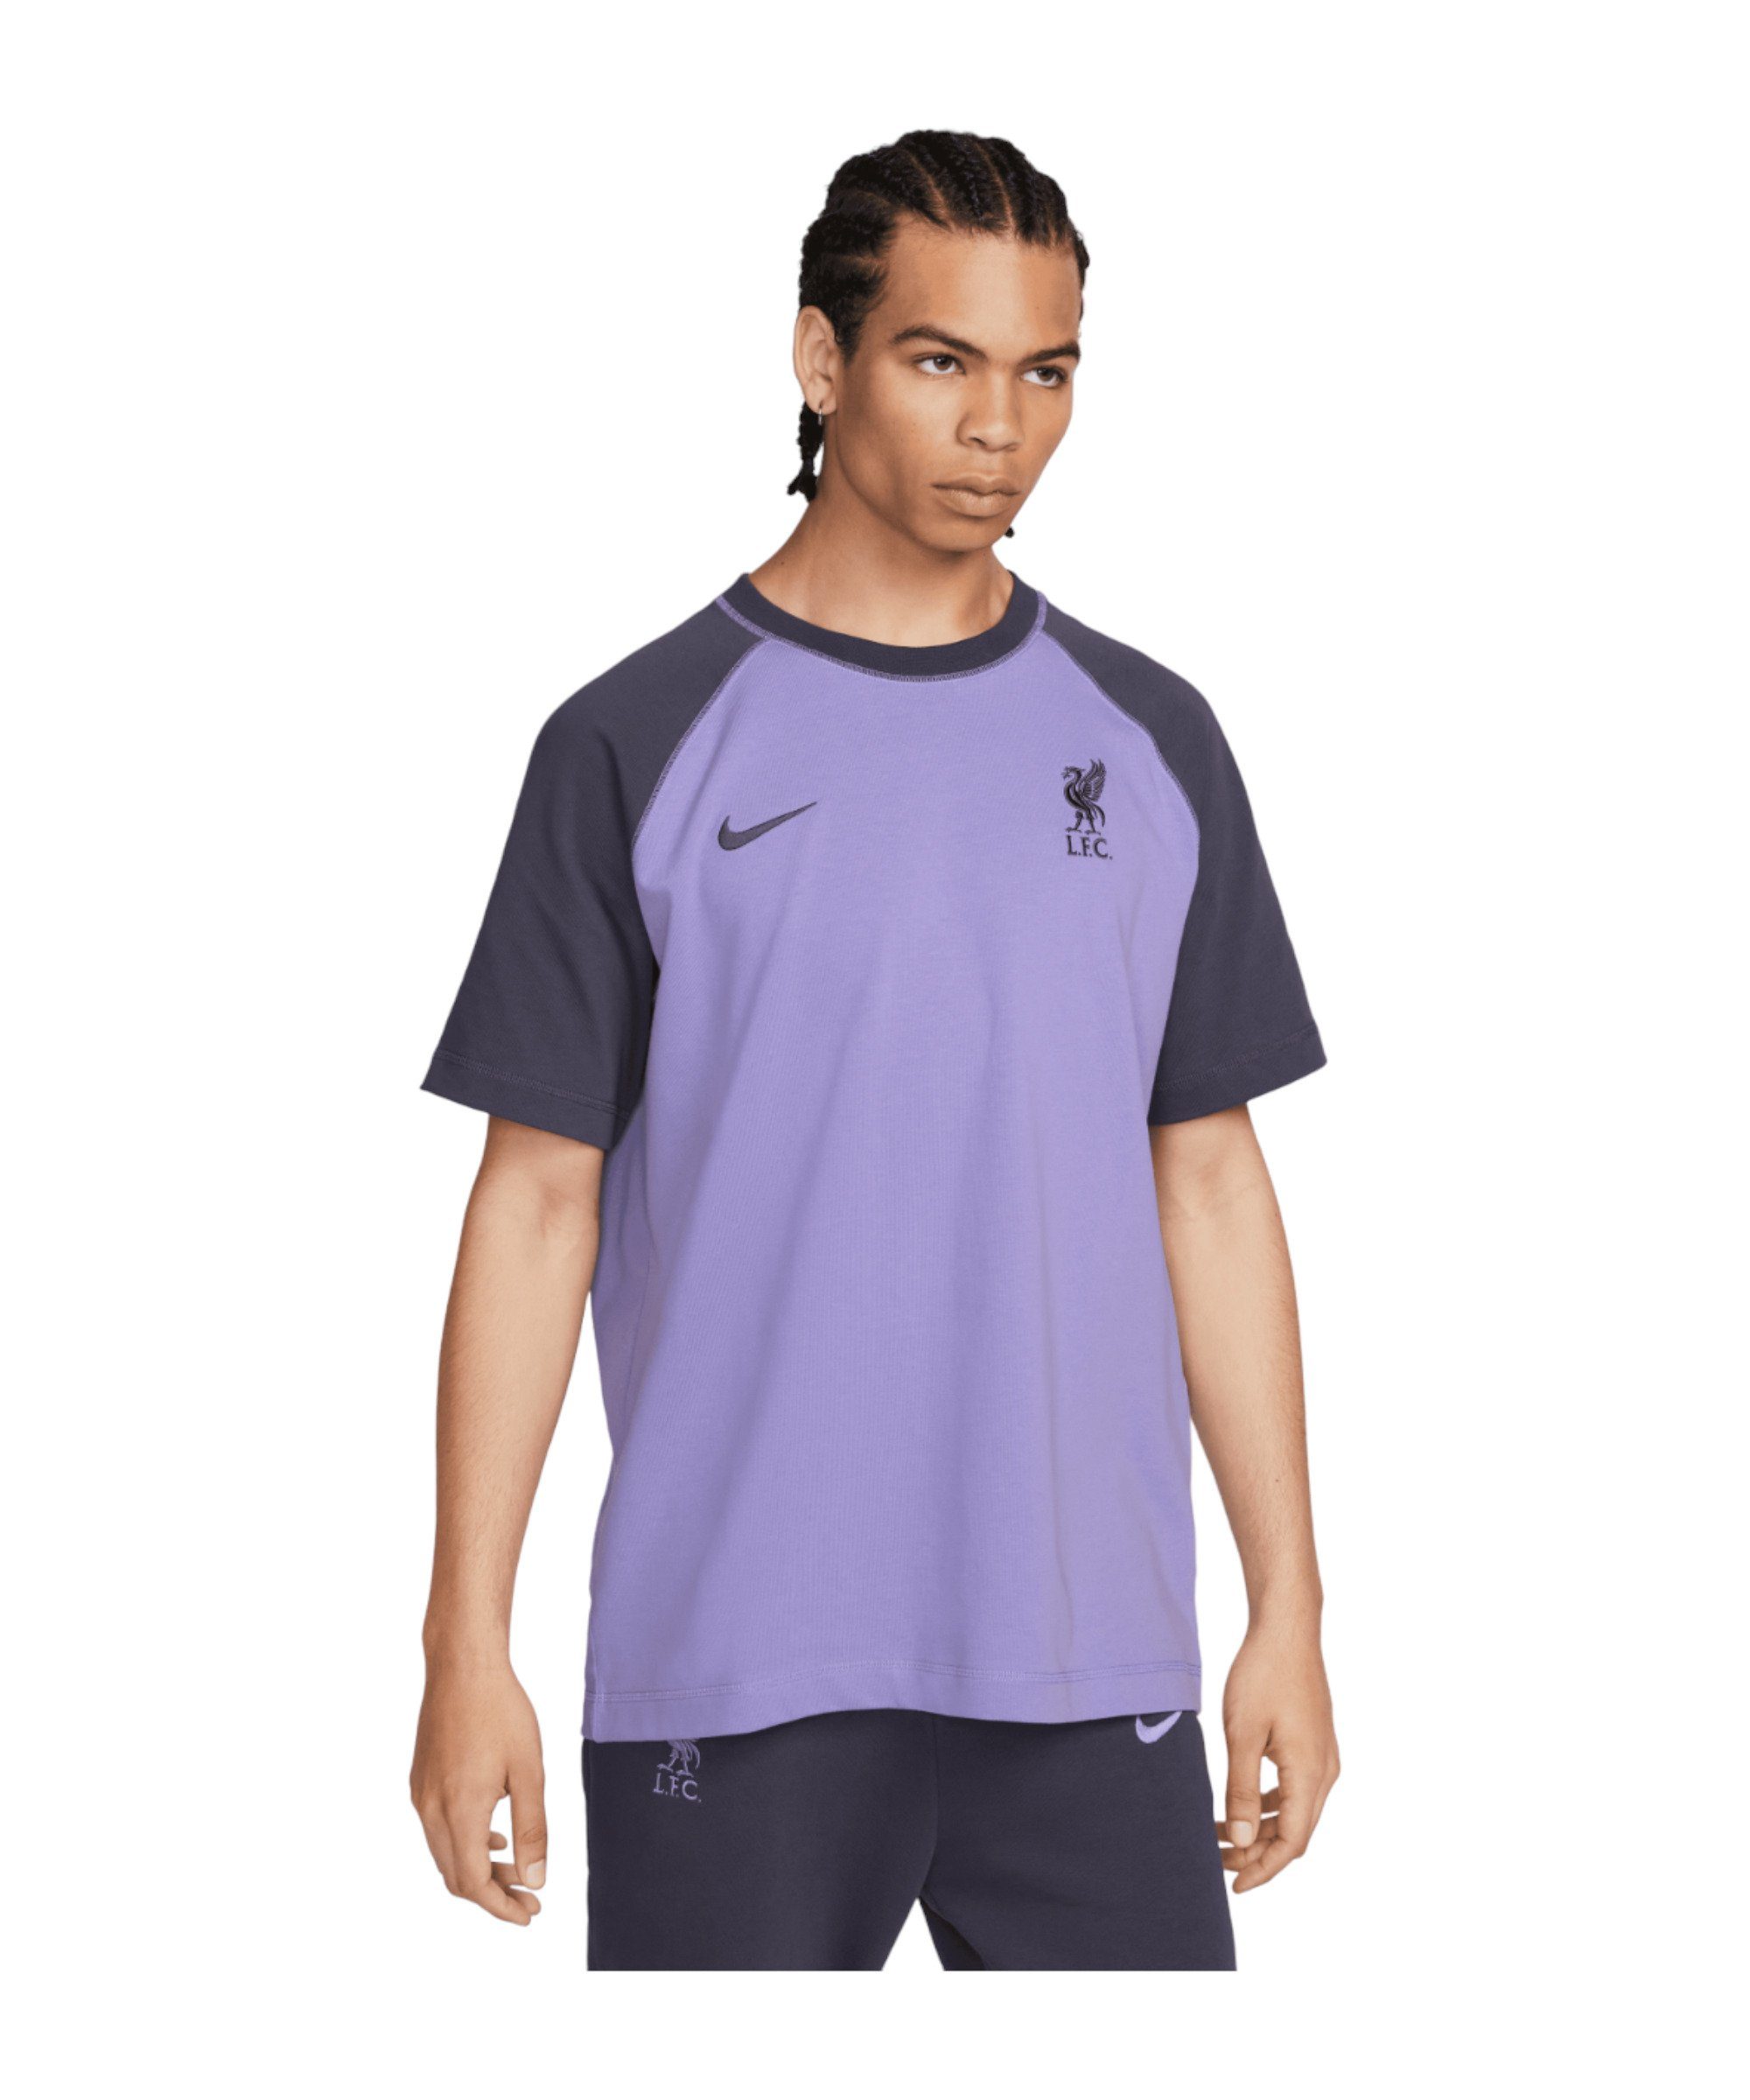 Trainingsshirt Nike lilagrau FC T-Shirt Liverpool default